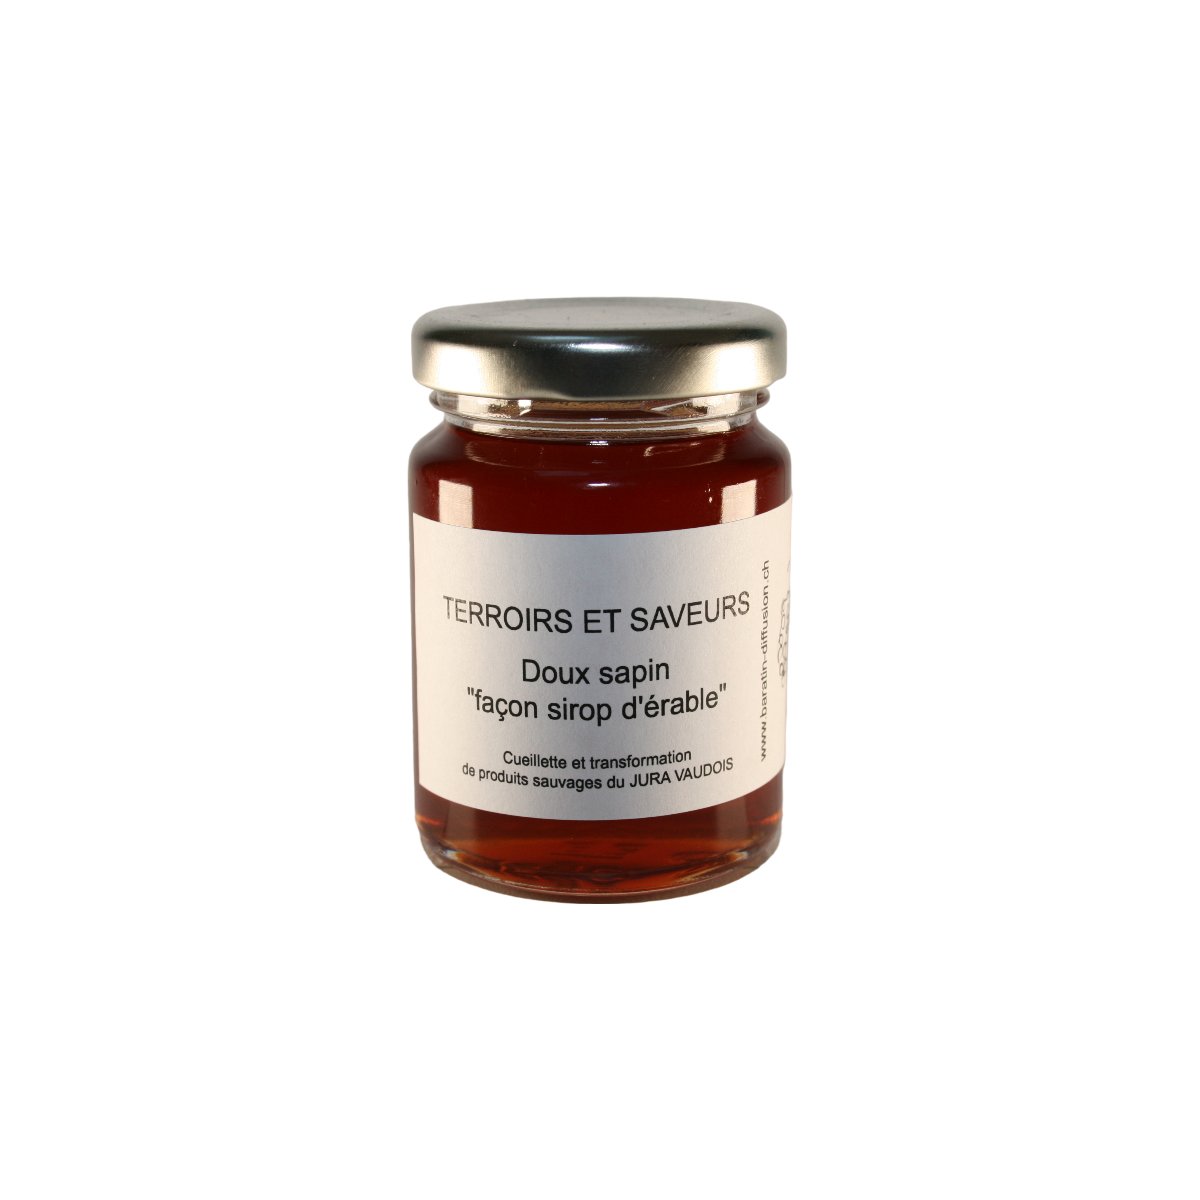 Gelée artisanale Doux sapin (façon sirop d'érable) sauvages du Jura Vaudois